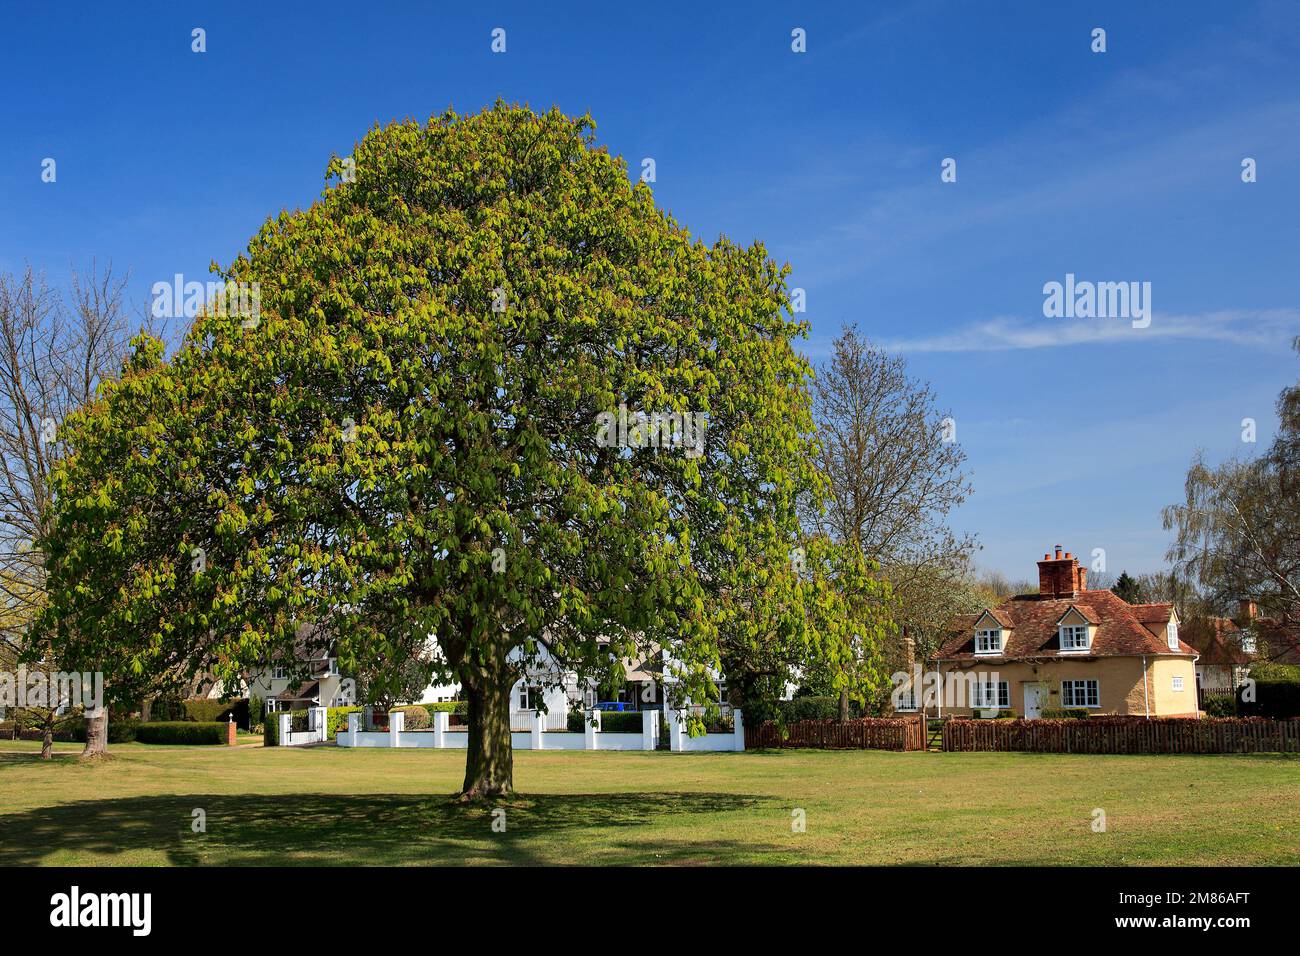 Rosskastanie Baum auf dem Dorfplatz grün, Ickwell Dorf, Bedfordshire, England, UK Stockfoto